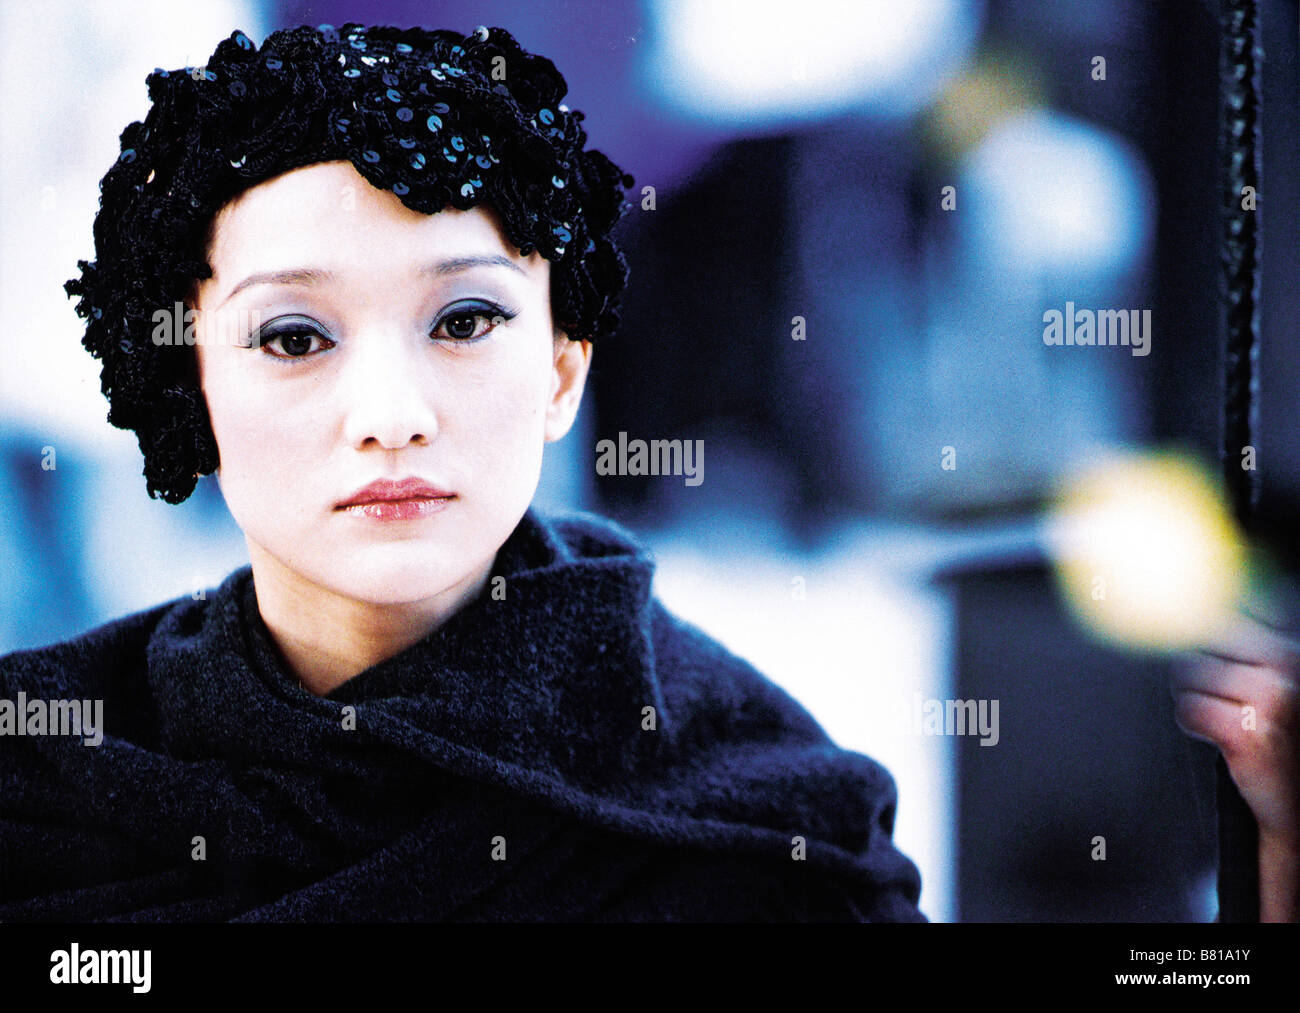 Perhaps Love Ru guo · Ai Year: 2005 - China / Malaysia / Hong Kong Zhou Xun  Director: Peter Ho-Sun Chan Stock Photo - Alamy